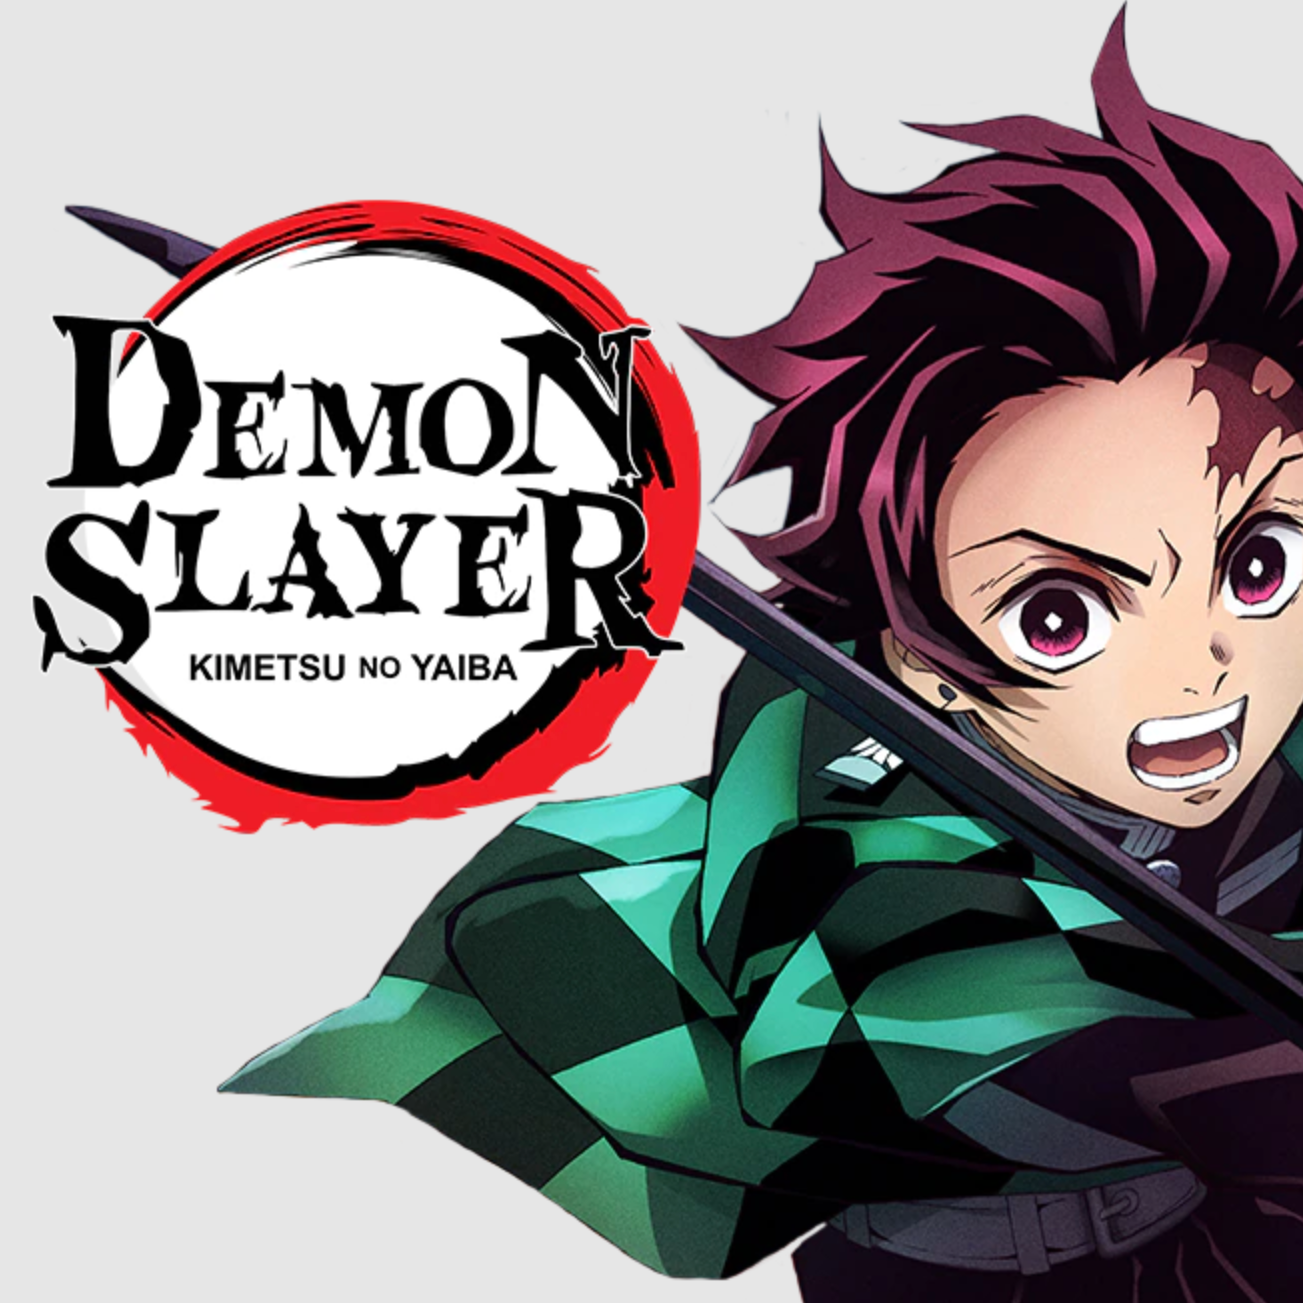 Kimetsu no Yaiba Yuukaku-hen/Demon Slayer Entertainment District